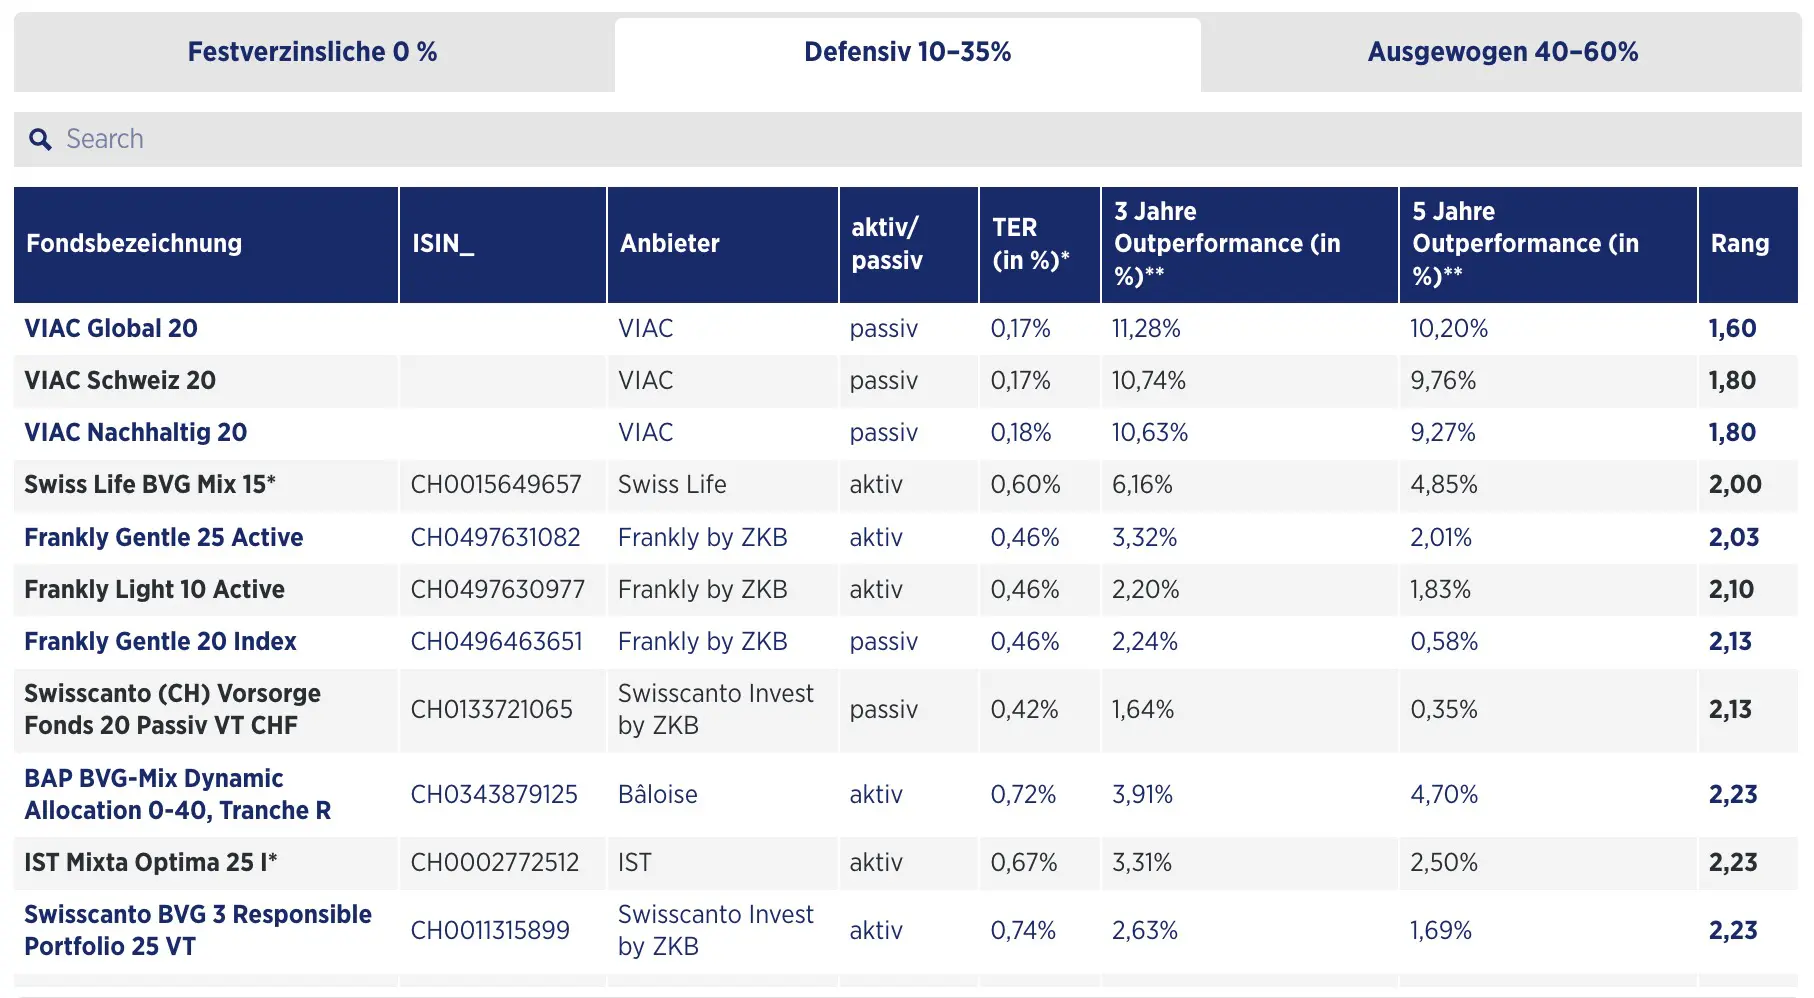 Comparatif 2023 Handelszeitung des meilleurs fonds 3a au profil défensif avec 10-35% en actions (source: Handelszeitung)